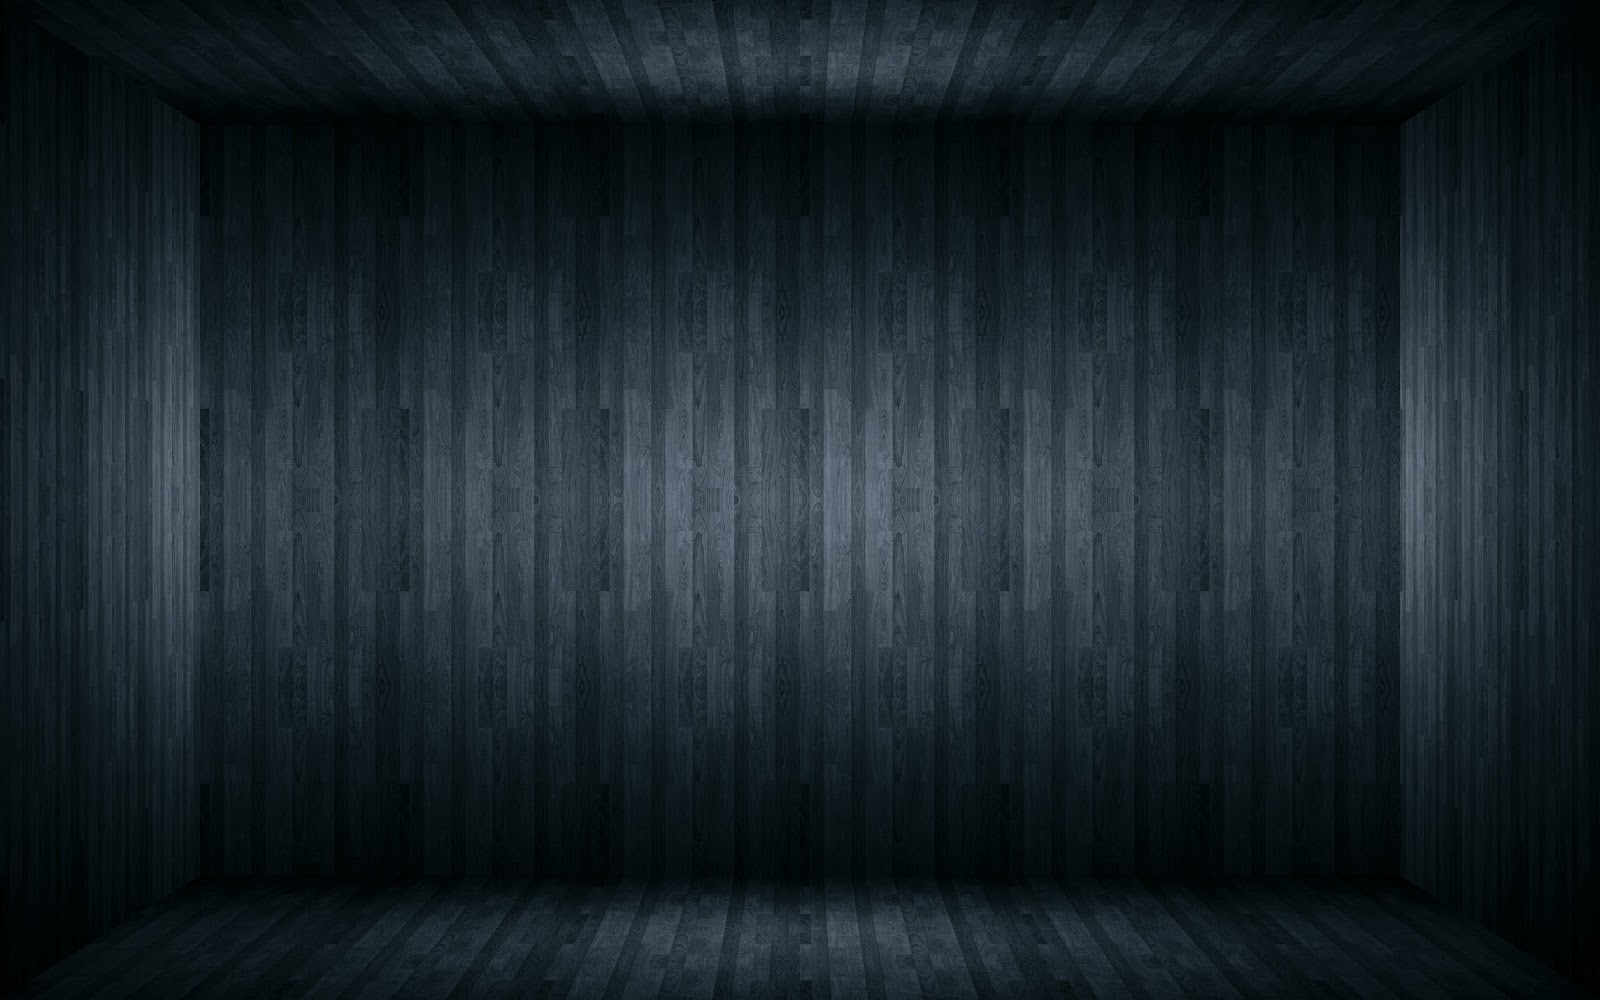 Dark Wallpaper